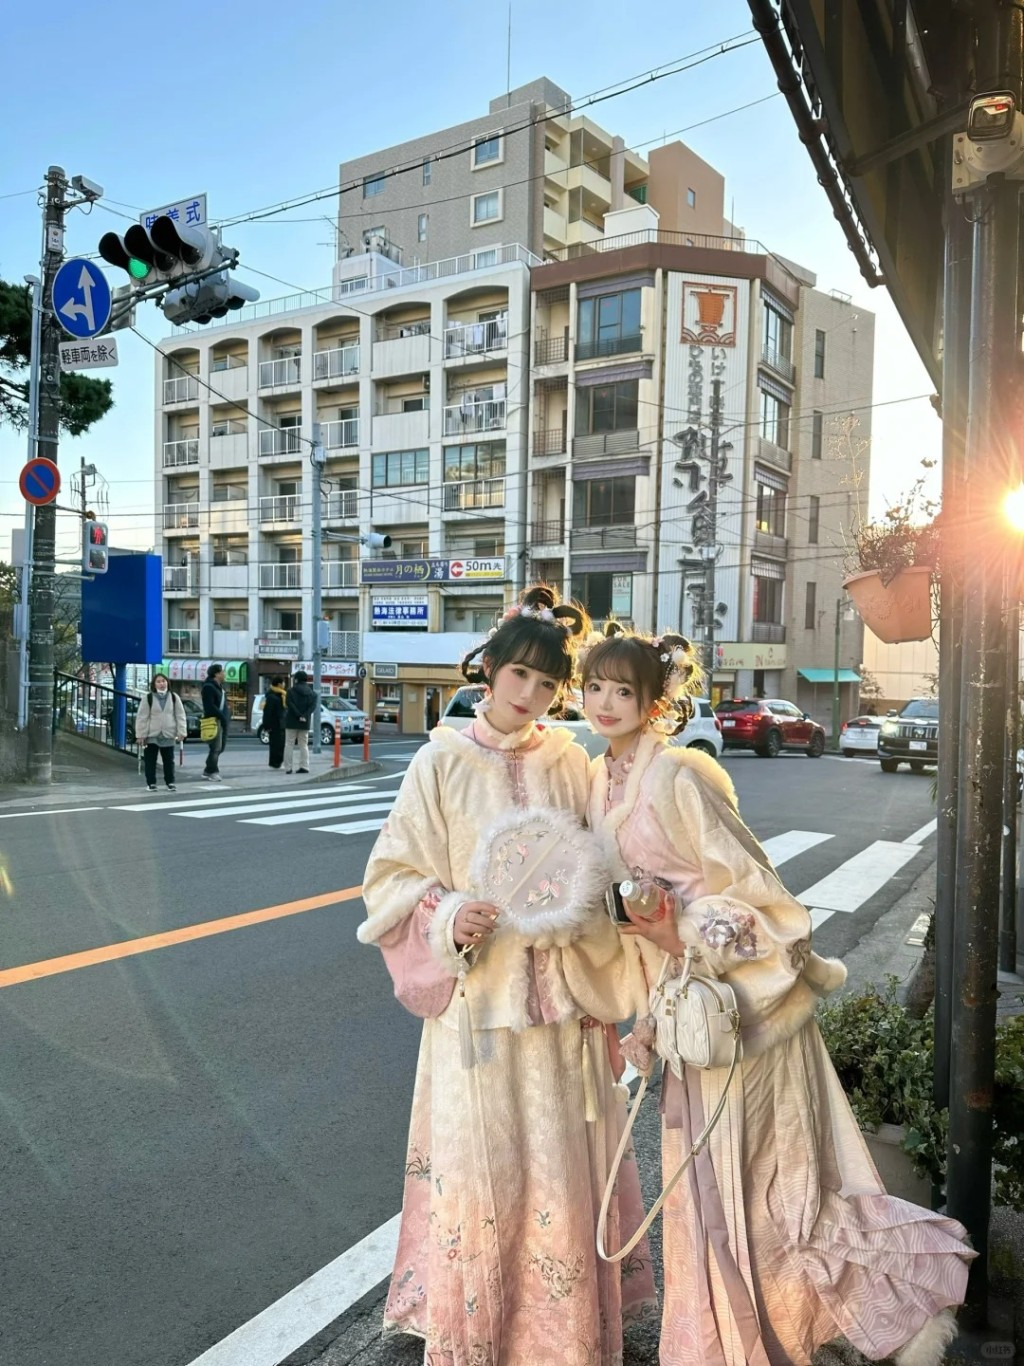 内地有网美在日本以汉服示人获不少当地人赞「卡哇伊」。小红书